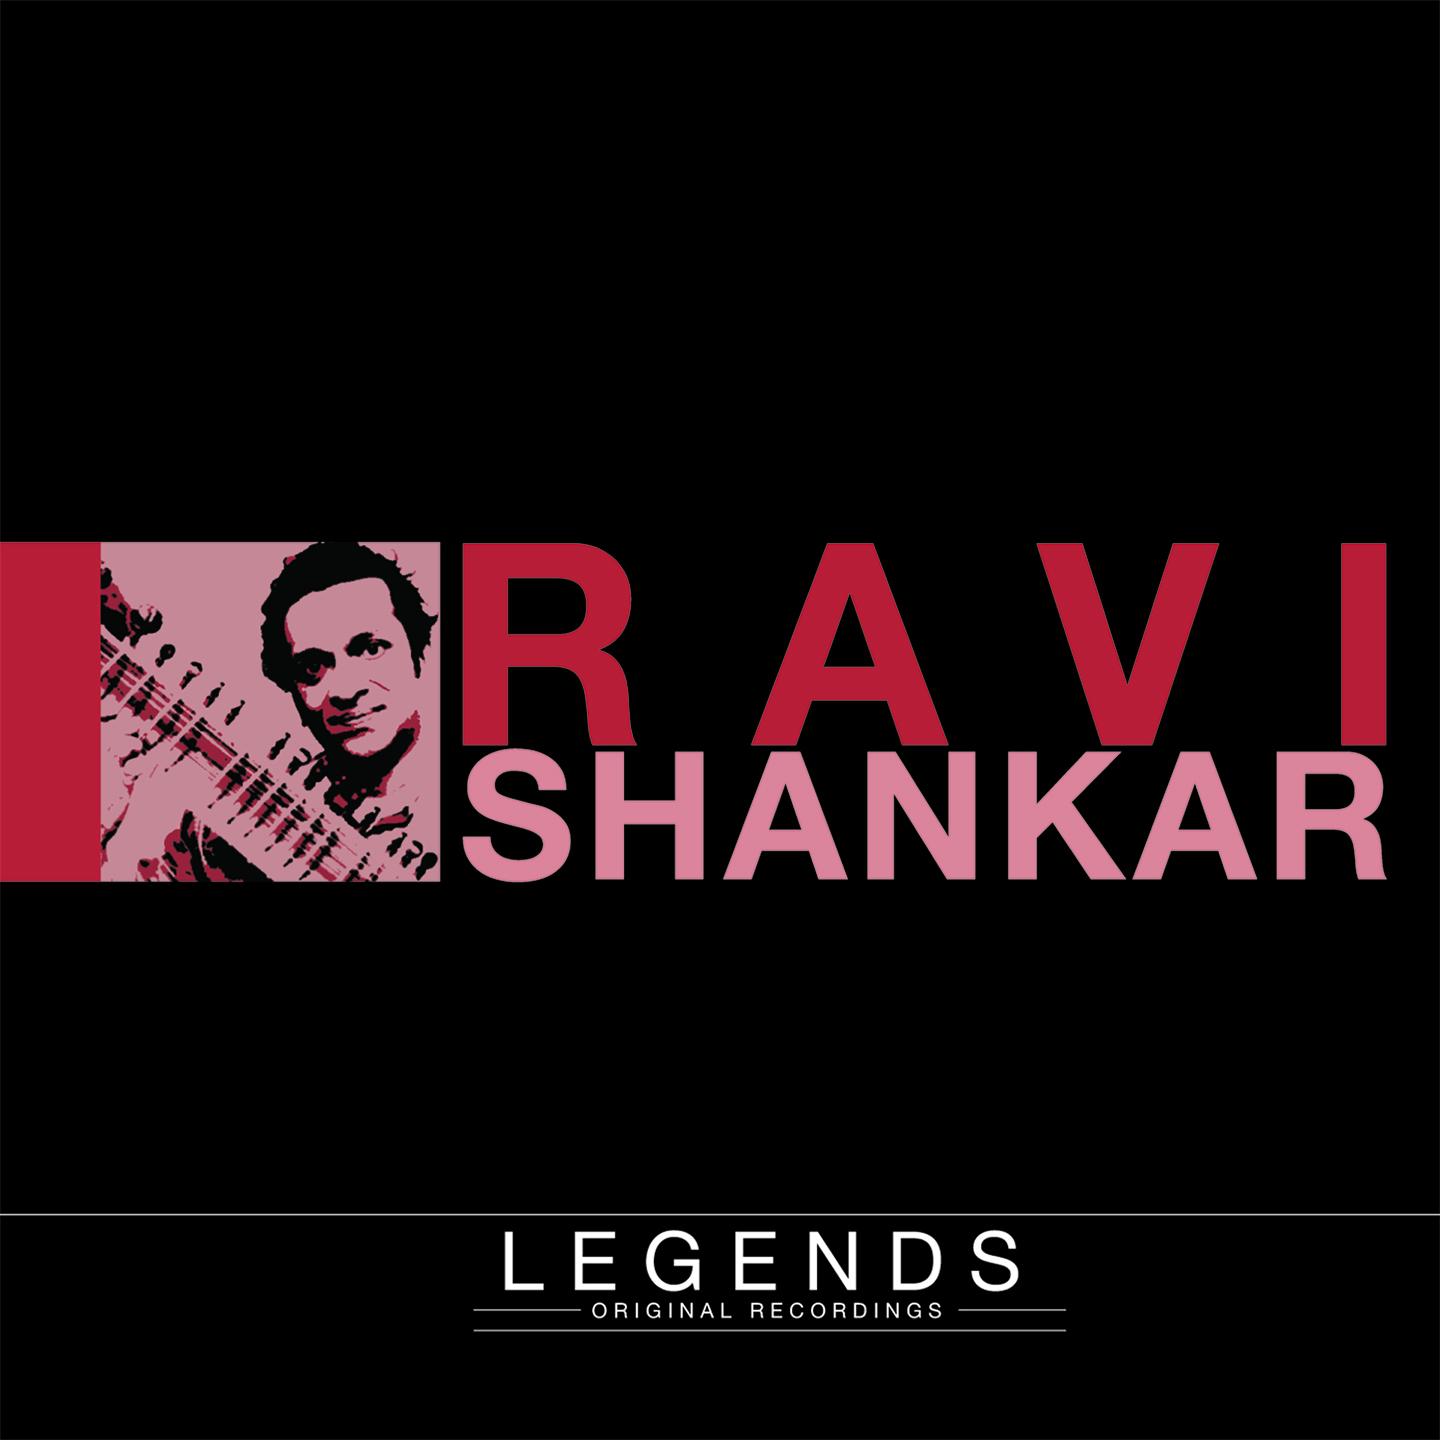 Legends - Ravi Shankar (The Sounds of India)